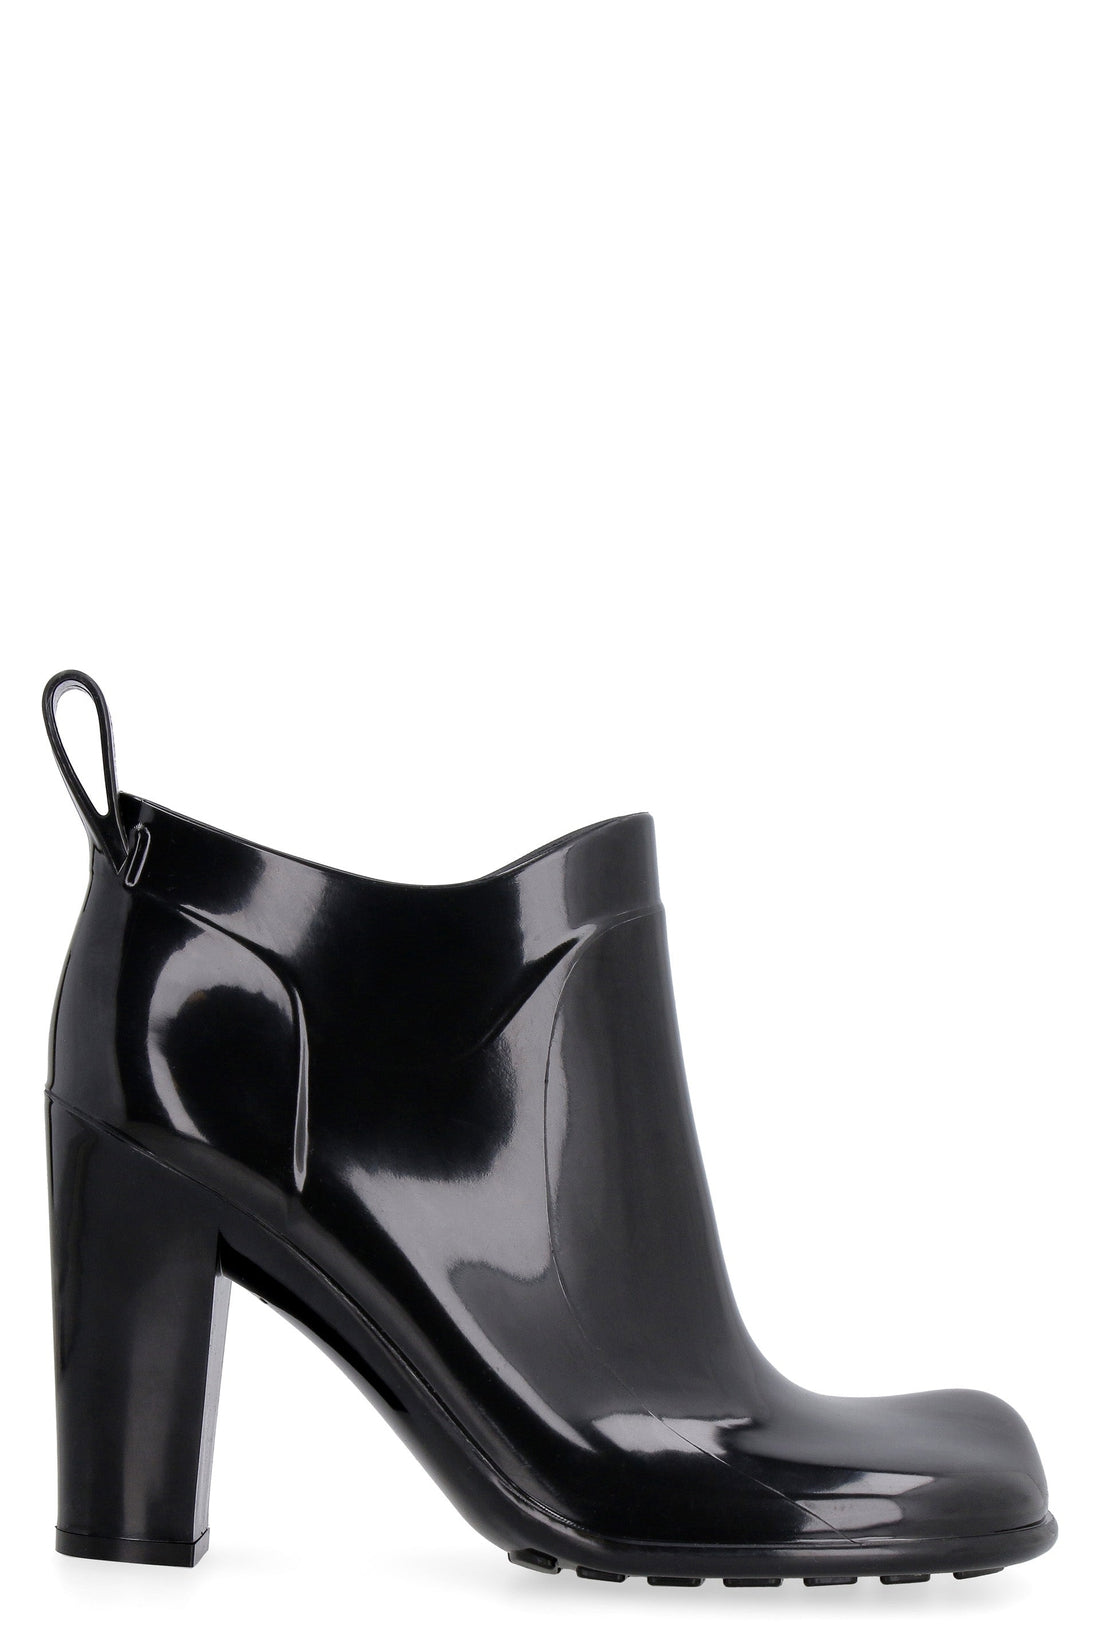 Bottega Veneta-OUTLET-SALE-Shine rubber boots-ARCHIVIST